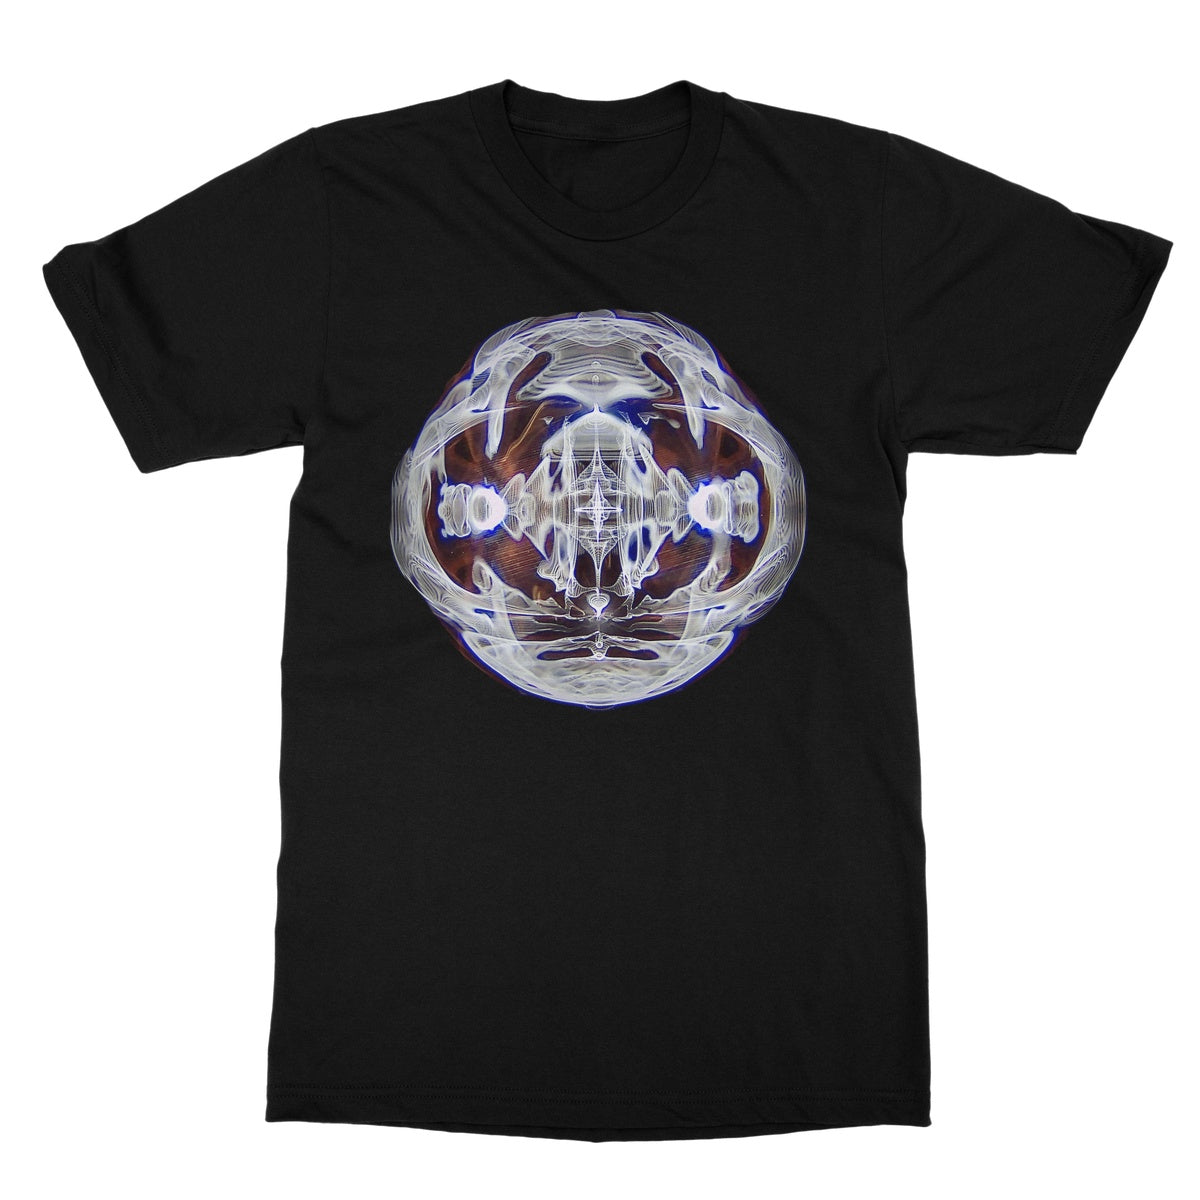 Cymatics 5 Softstyle T-Shirt